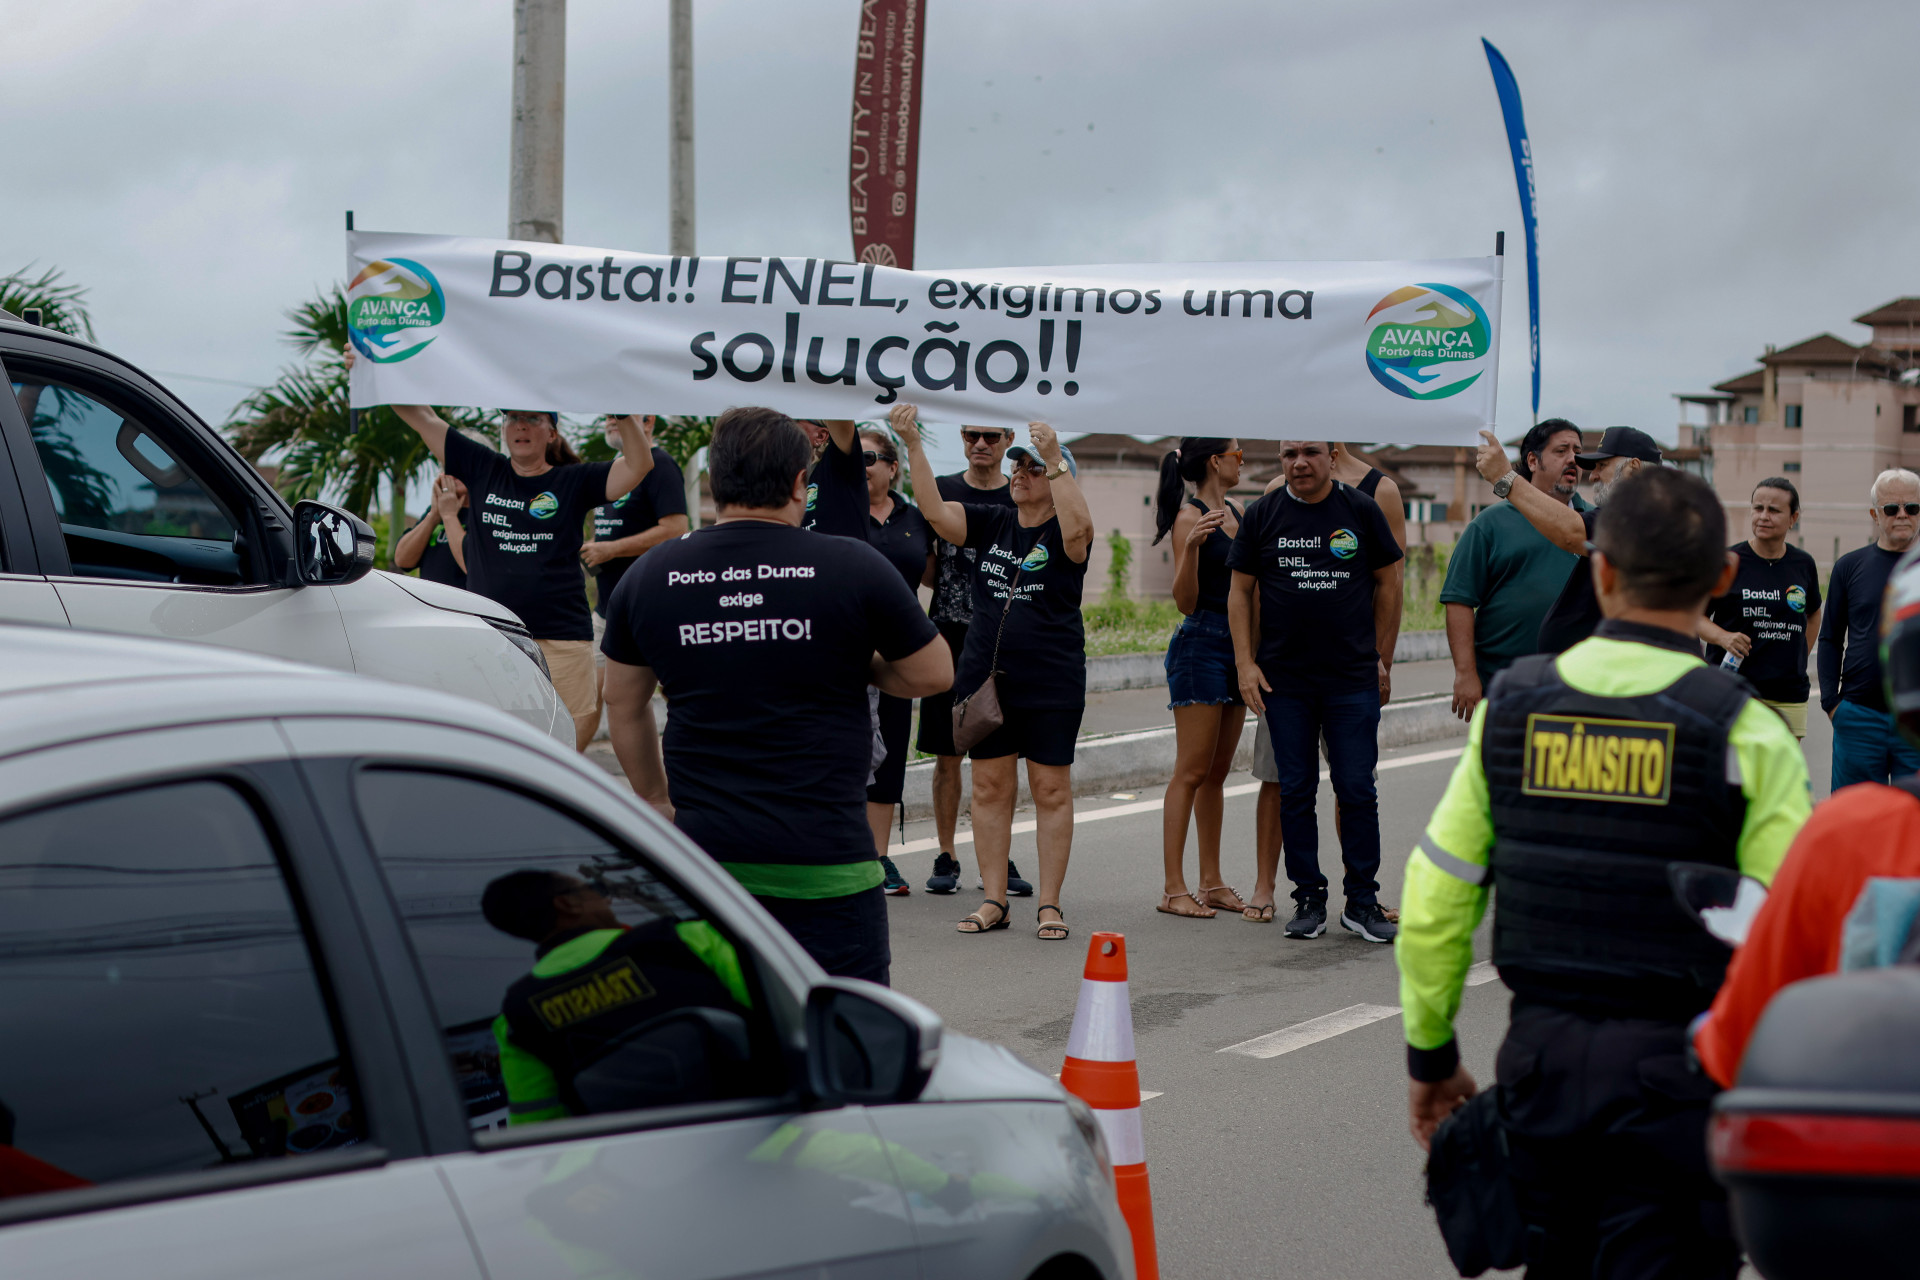 Grupo protesta em frente a prédio da Enel contra falta de energia em SP, São Paulo